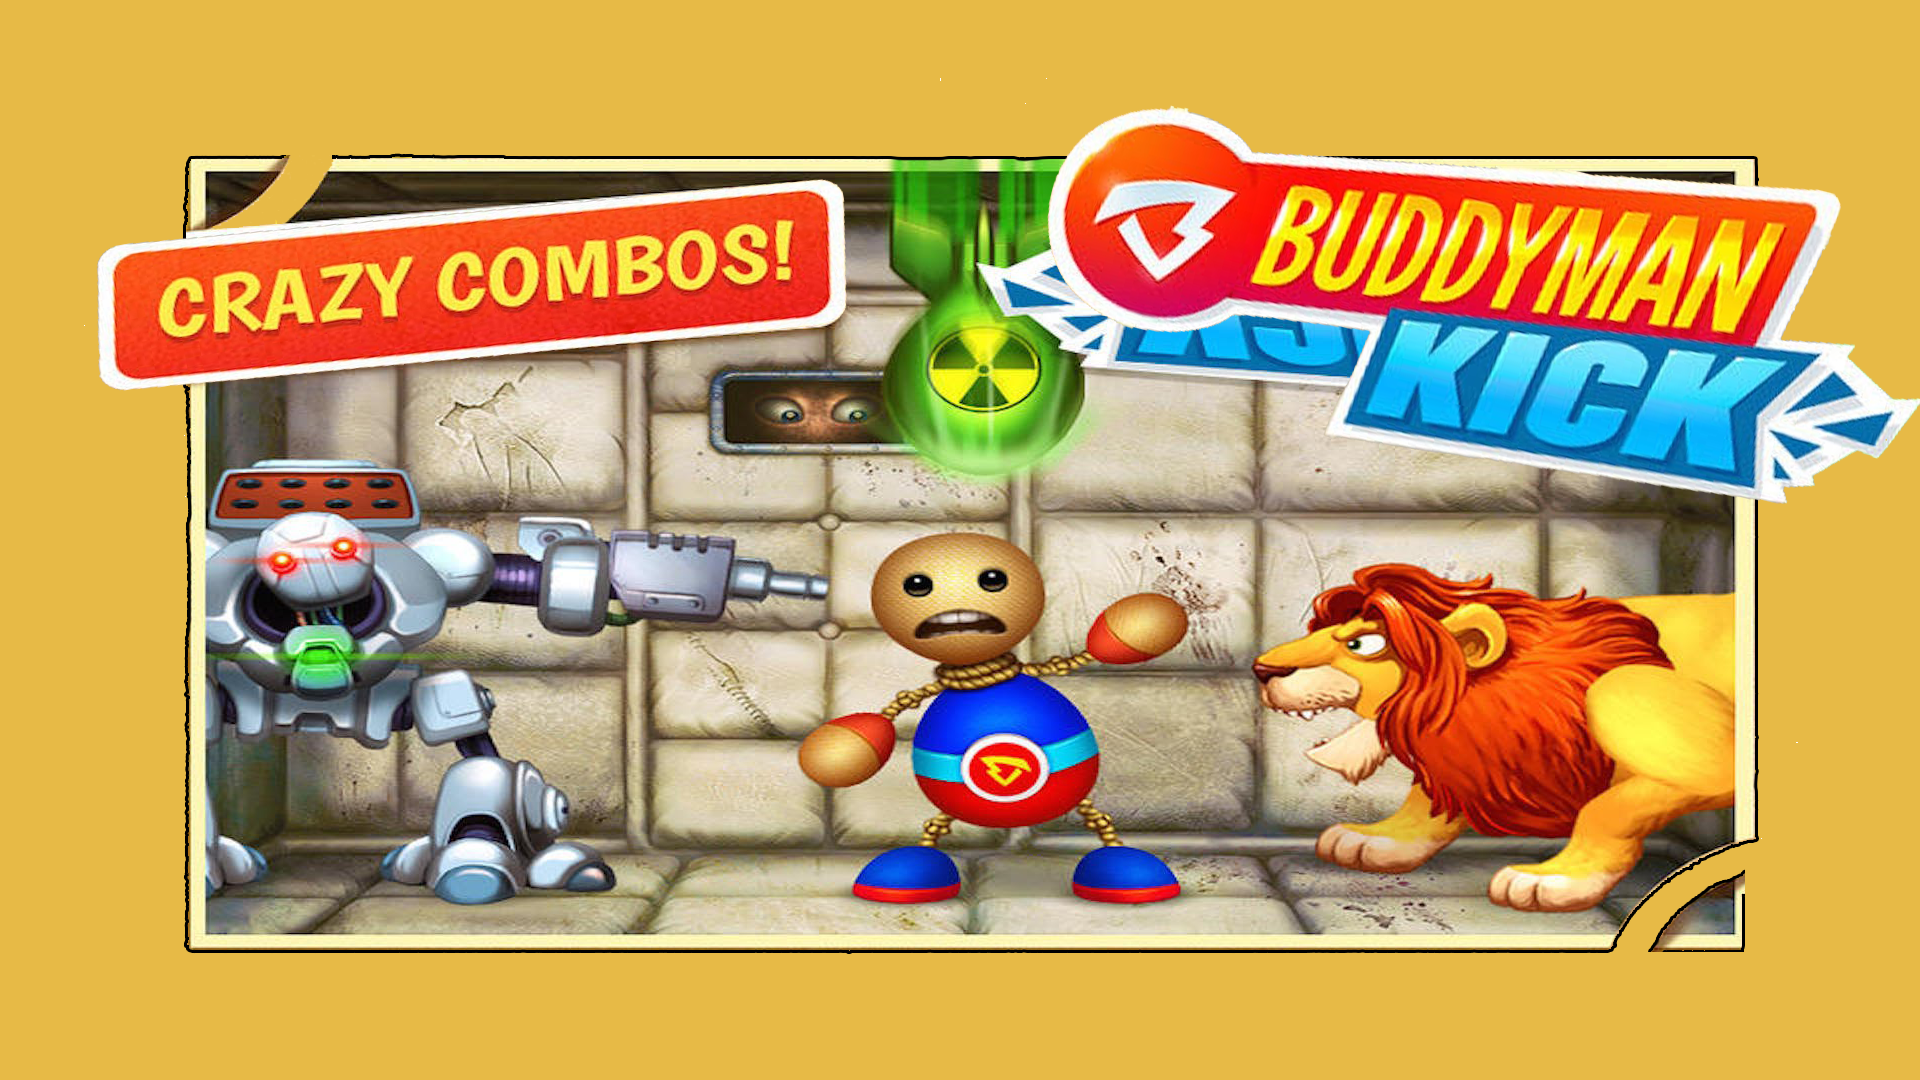 Screenshot 1 of Super Buddyman Kick 2 - Das Lauf-Abenteuerspiel 2.2.0